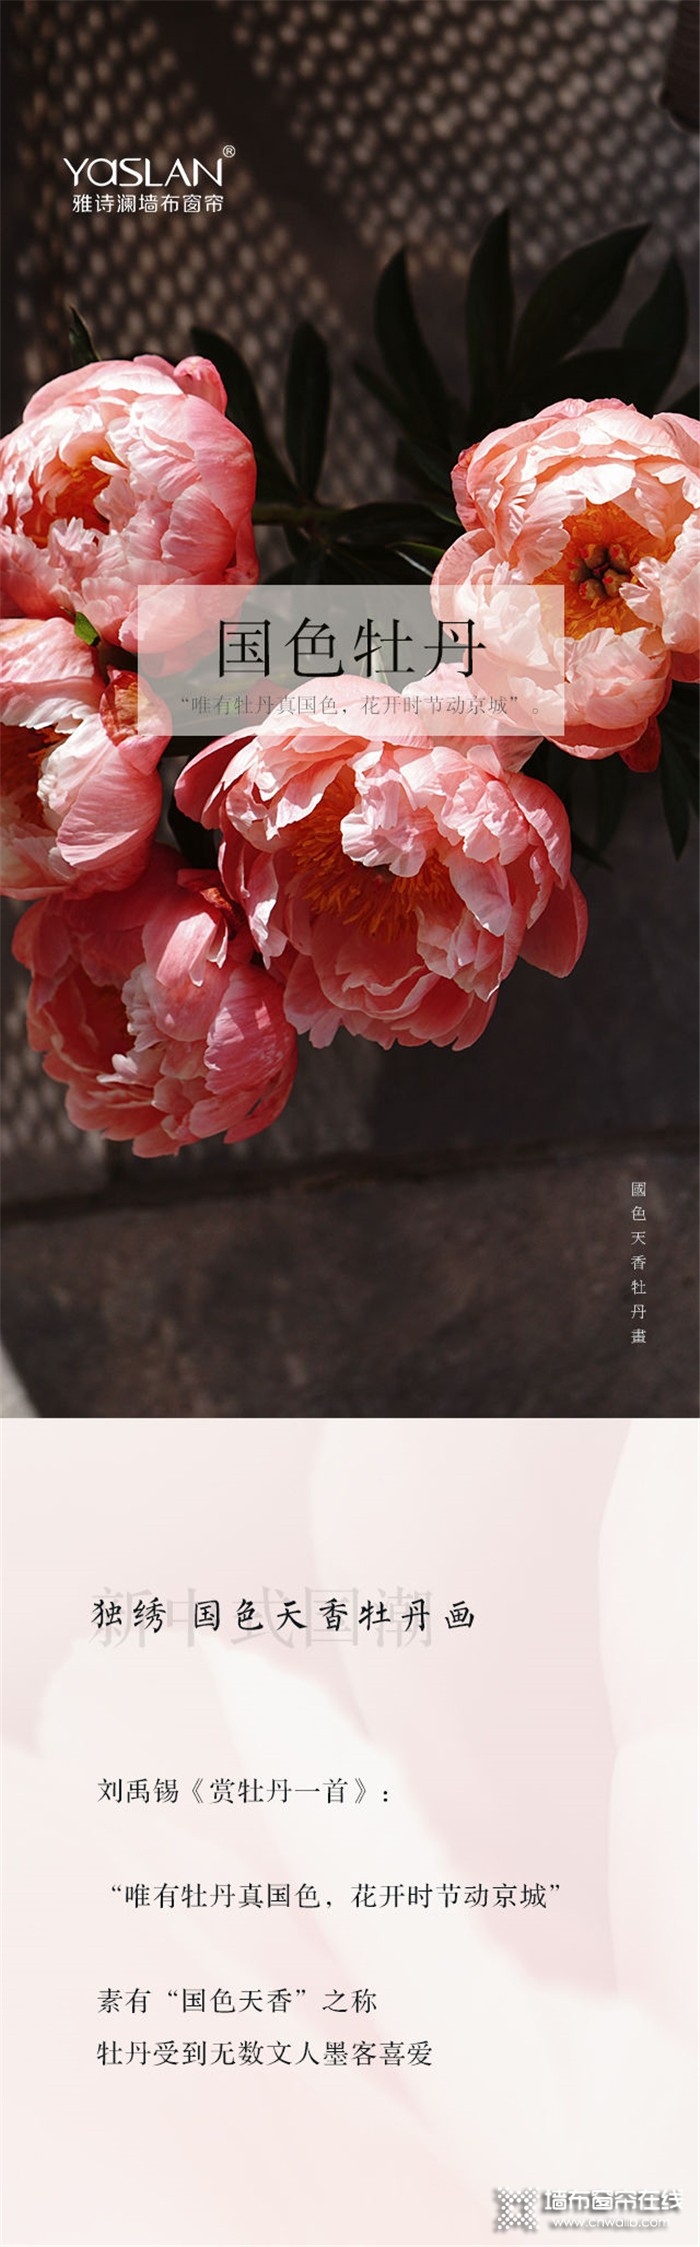 雅诗澜——国色天香牡丹画，为家居空间增添色彩